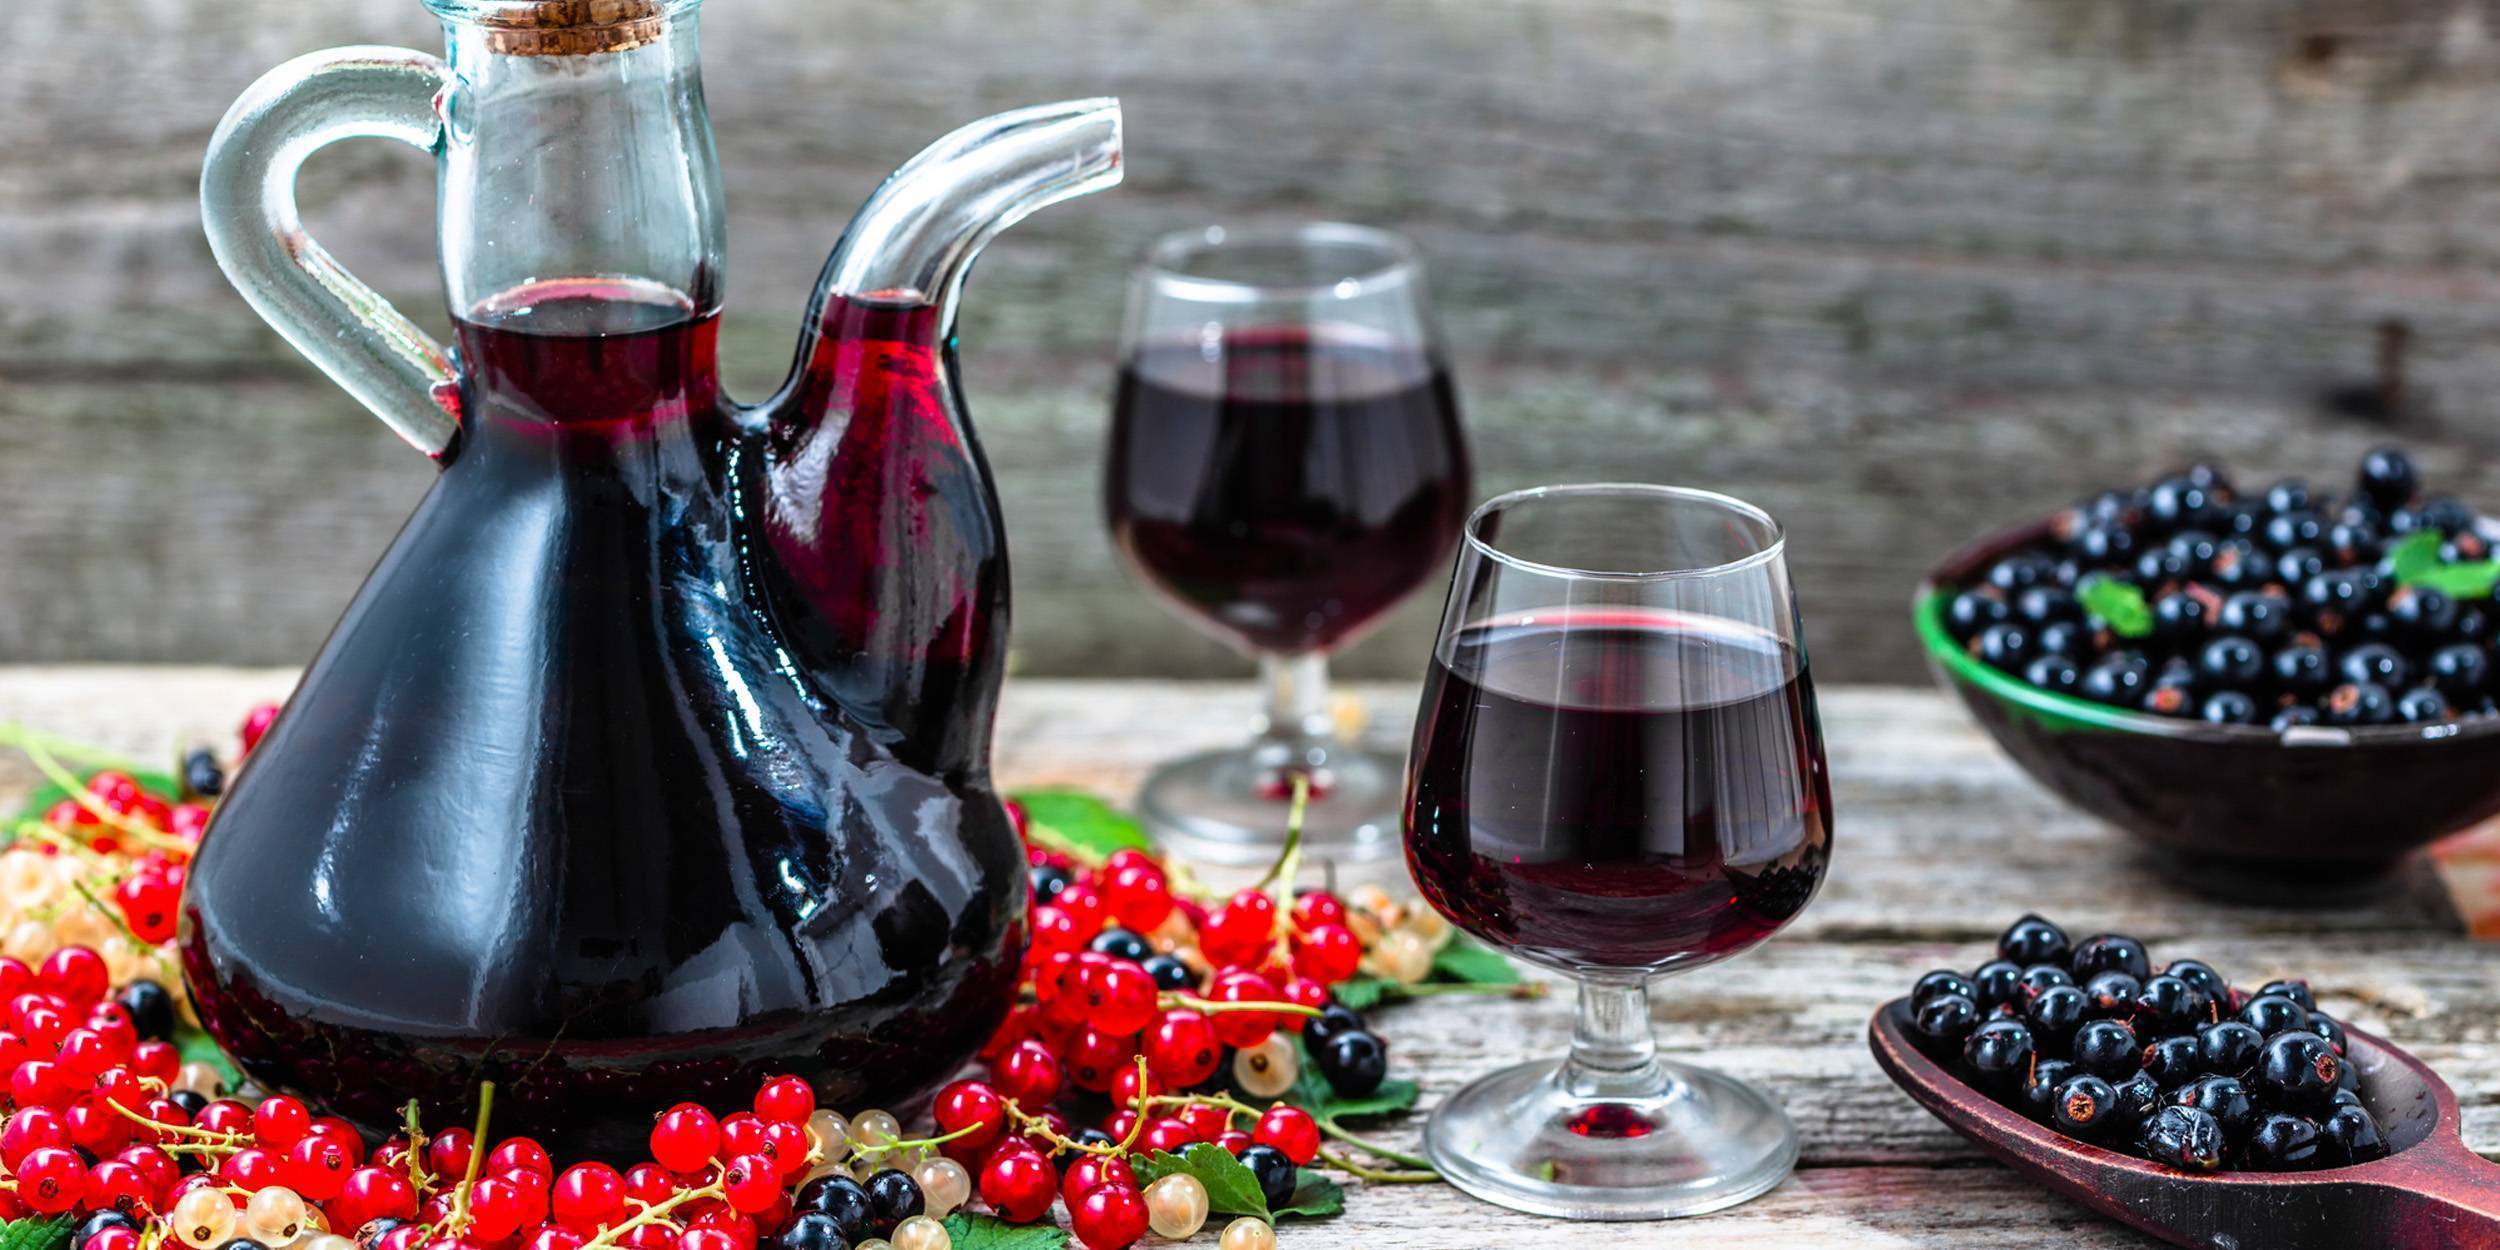 Как делать вино в домашних условиях — основные этапы, правила и рекомендации